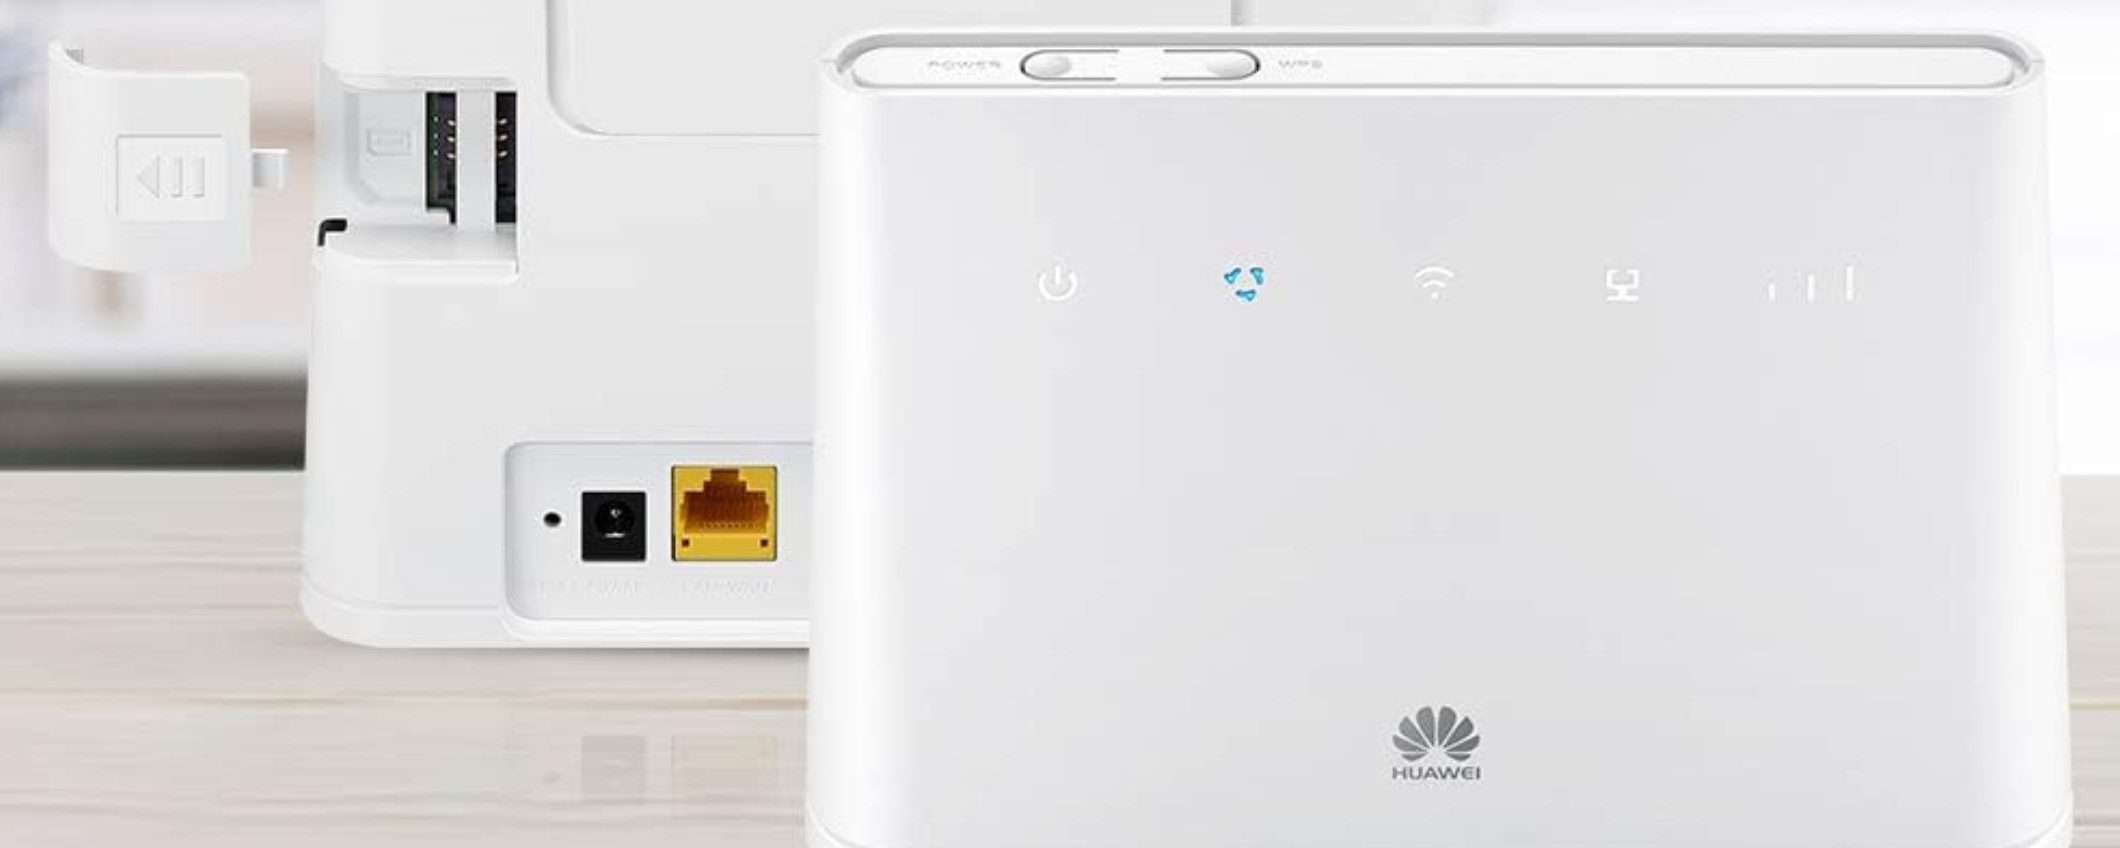 Router Huawei 4G VELOCISSIMO: prezzone su Amazon (-40%)